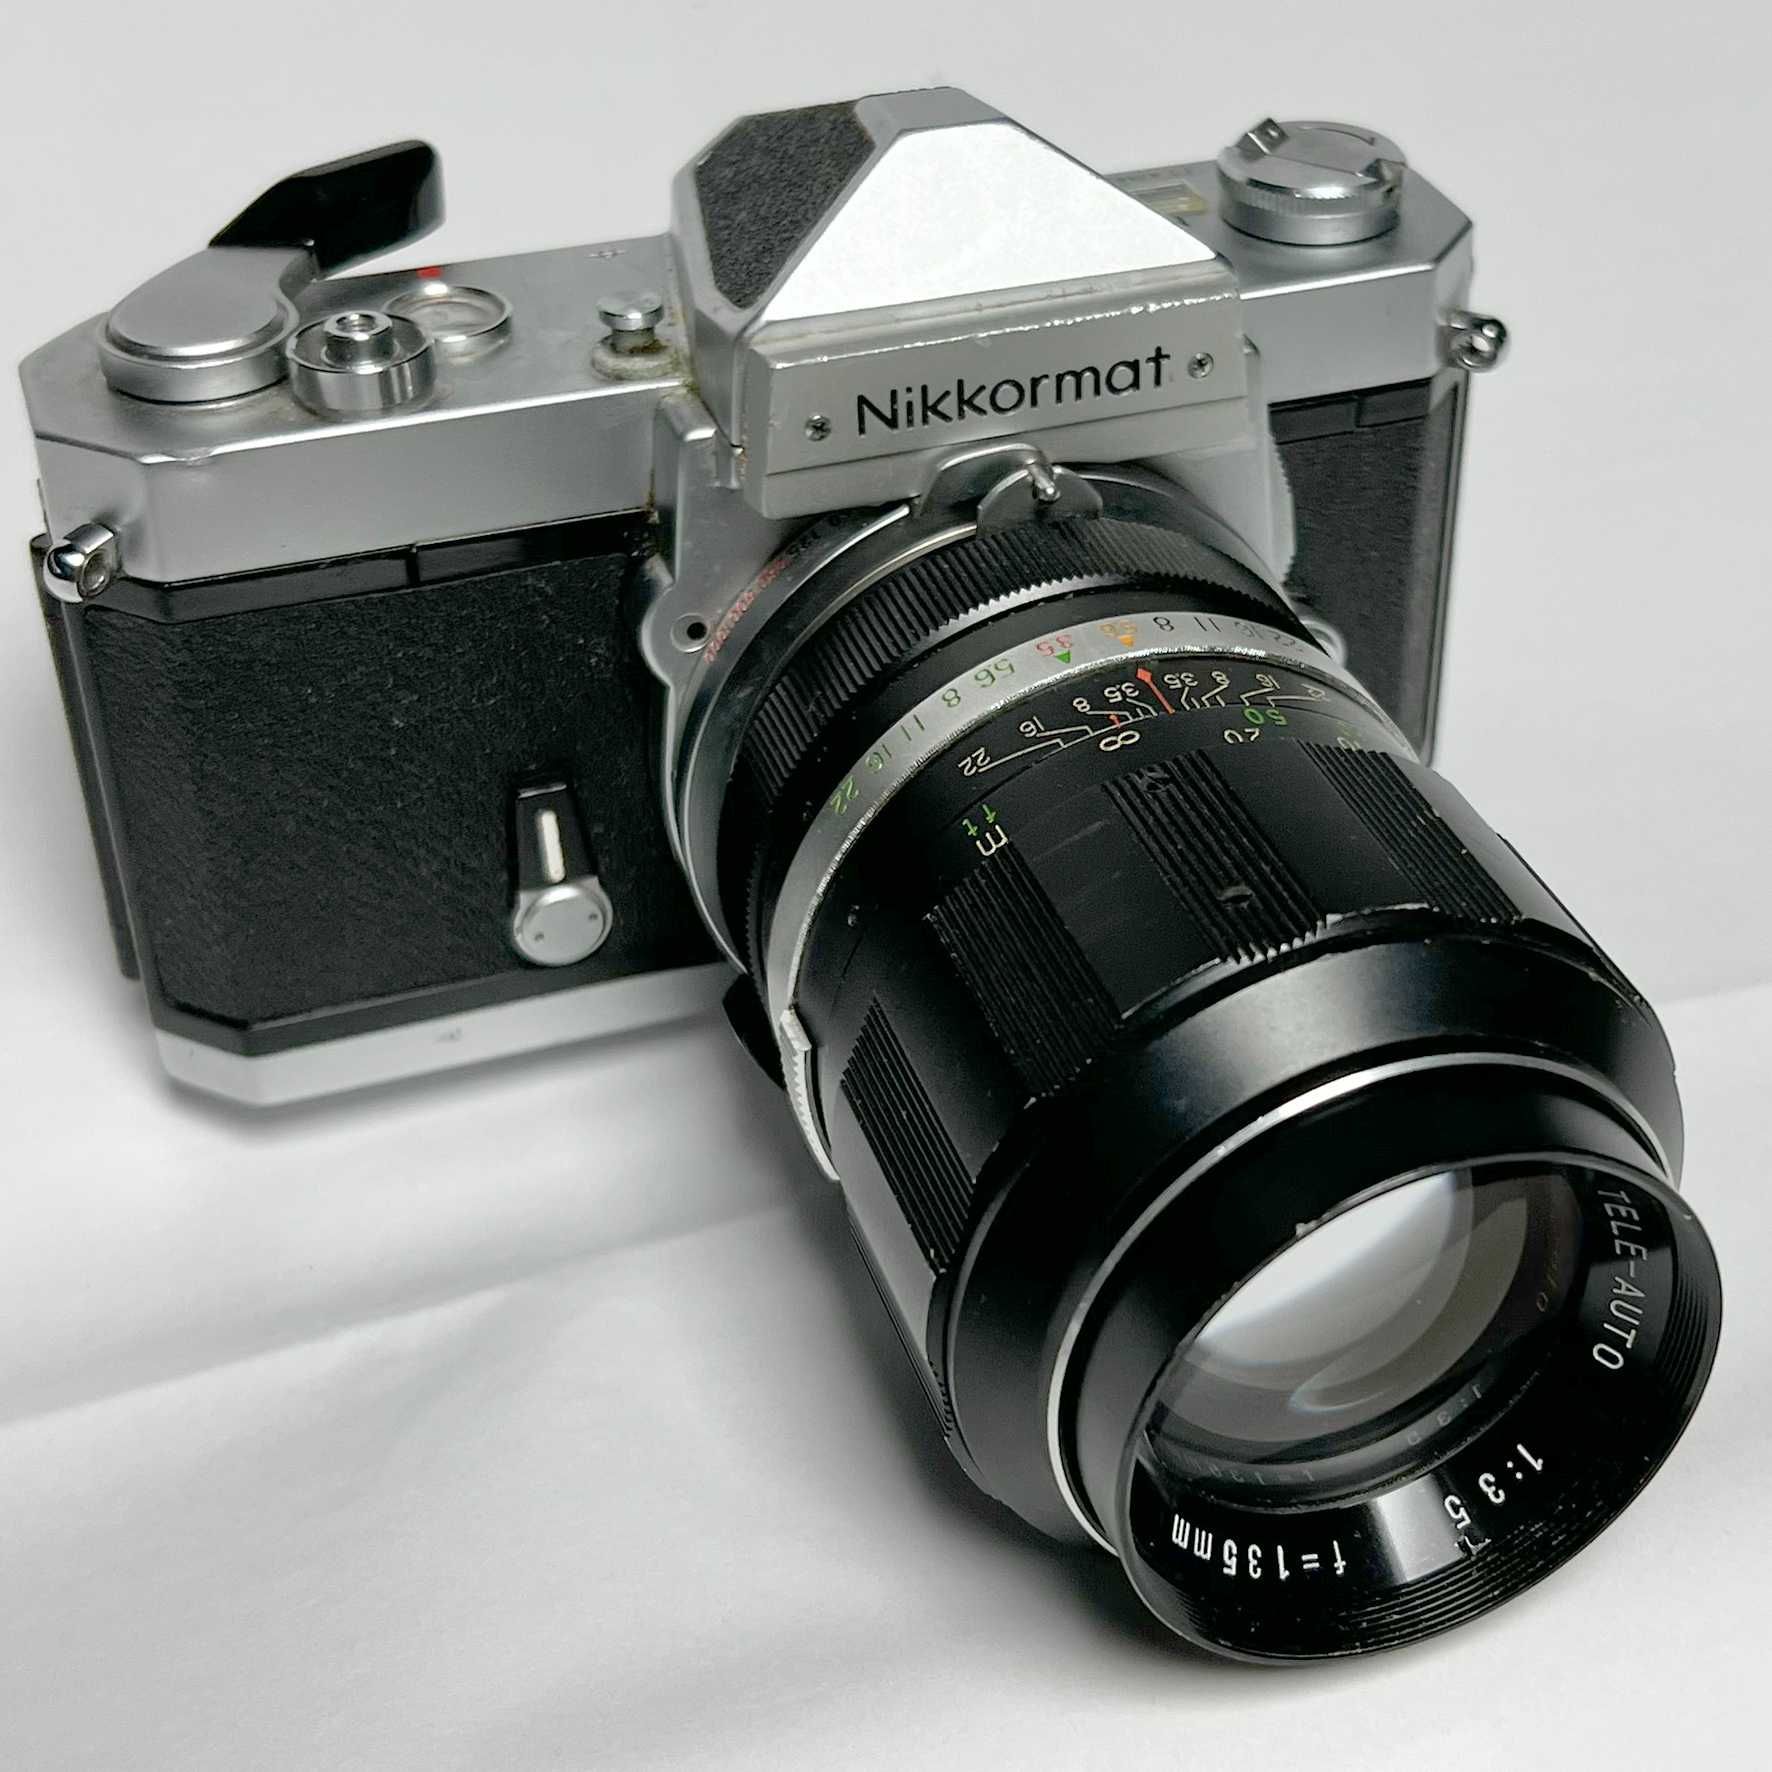 Nikkormat,Nikon FTN foto film, colectie+135mm